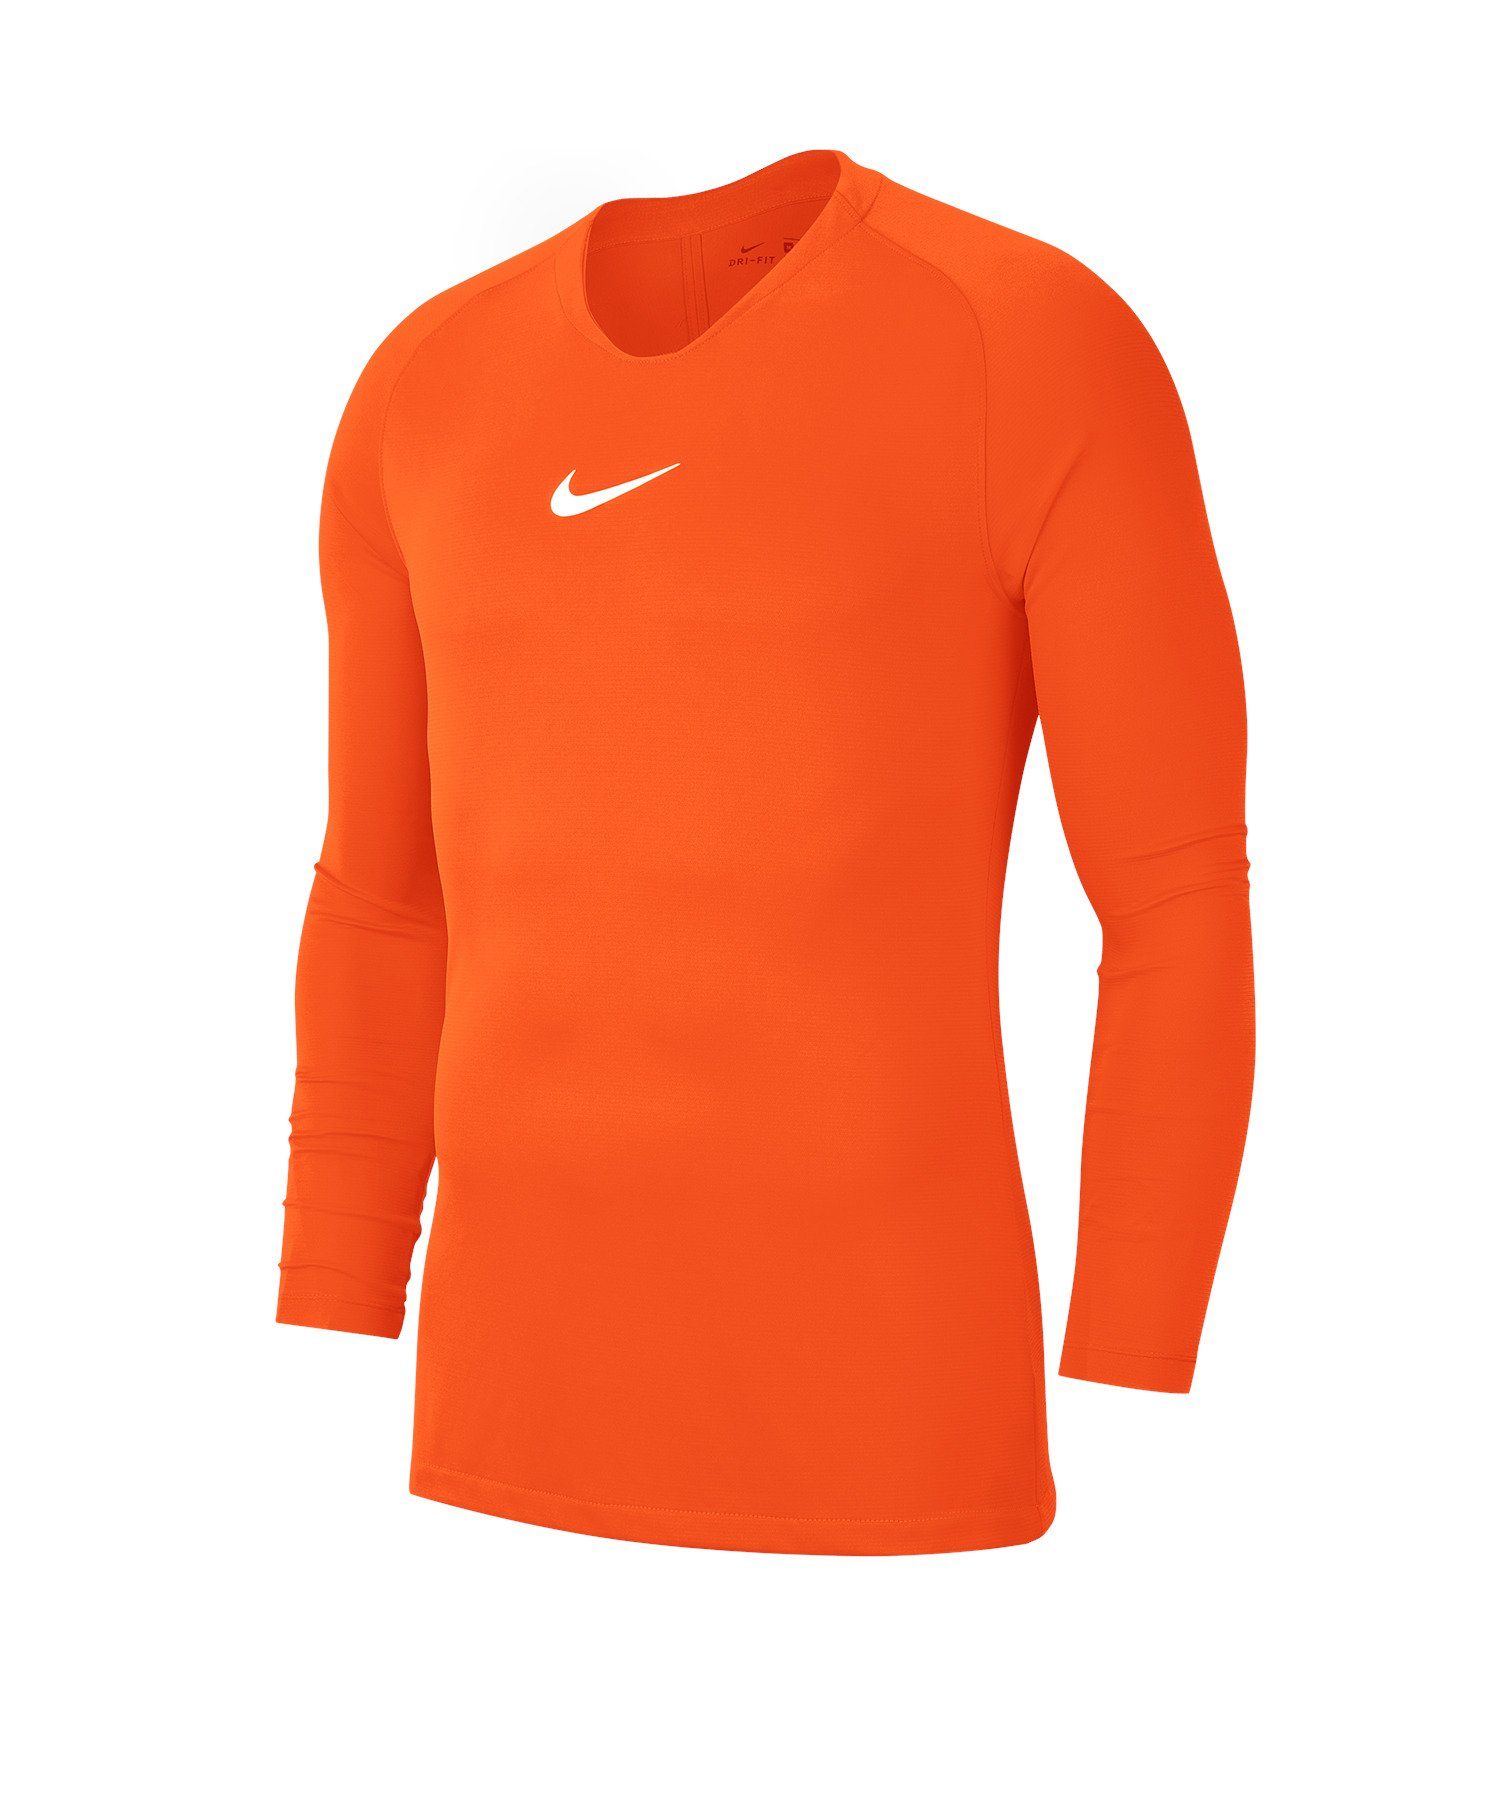 Layer Daumenöffnung First Park Funktionsshirt orange Top Kids Nike